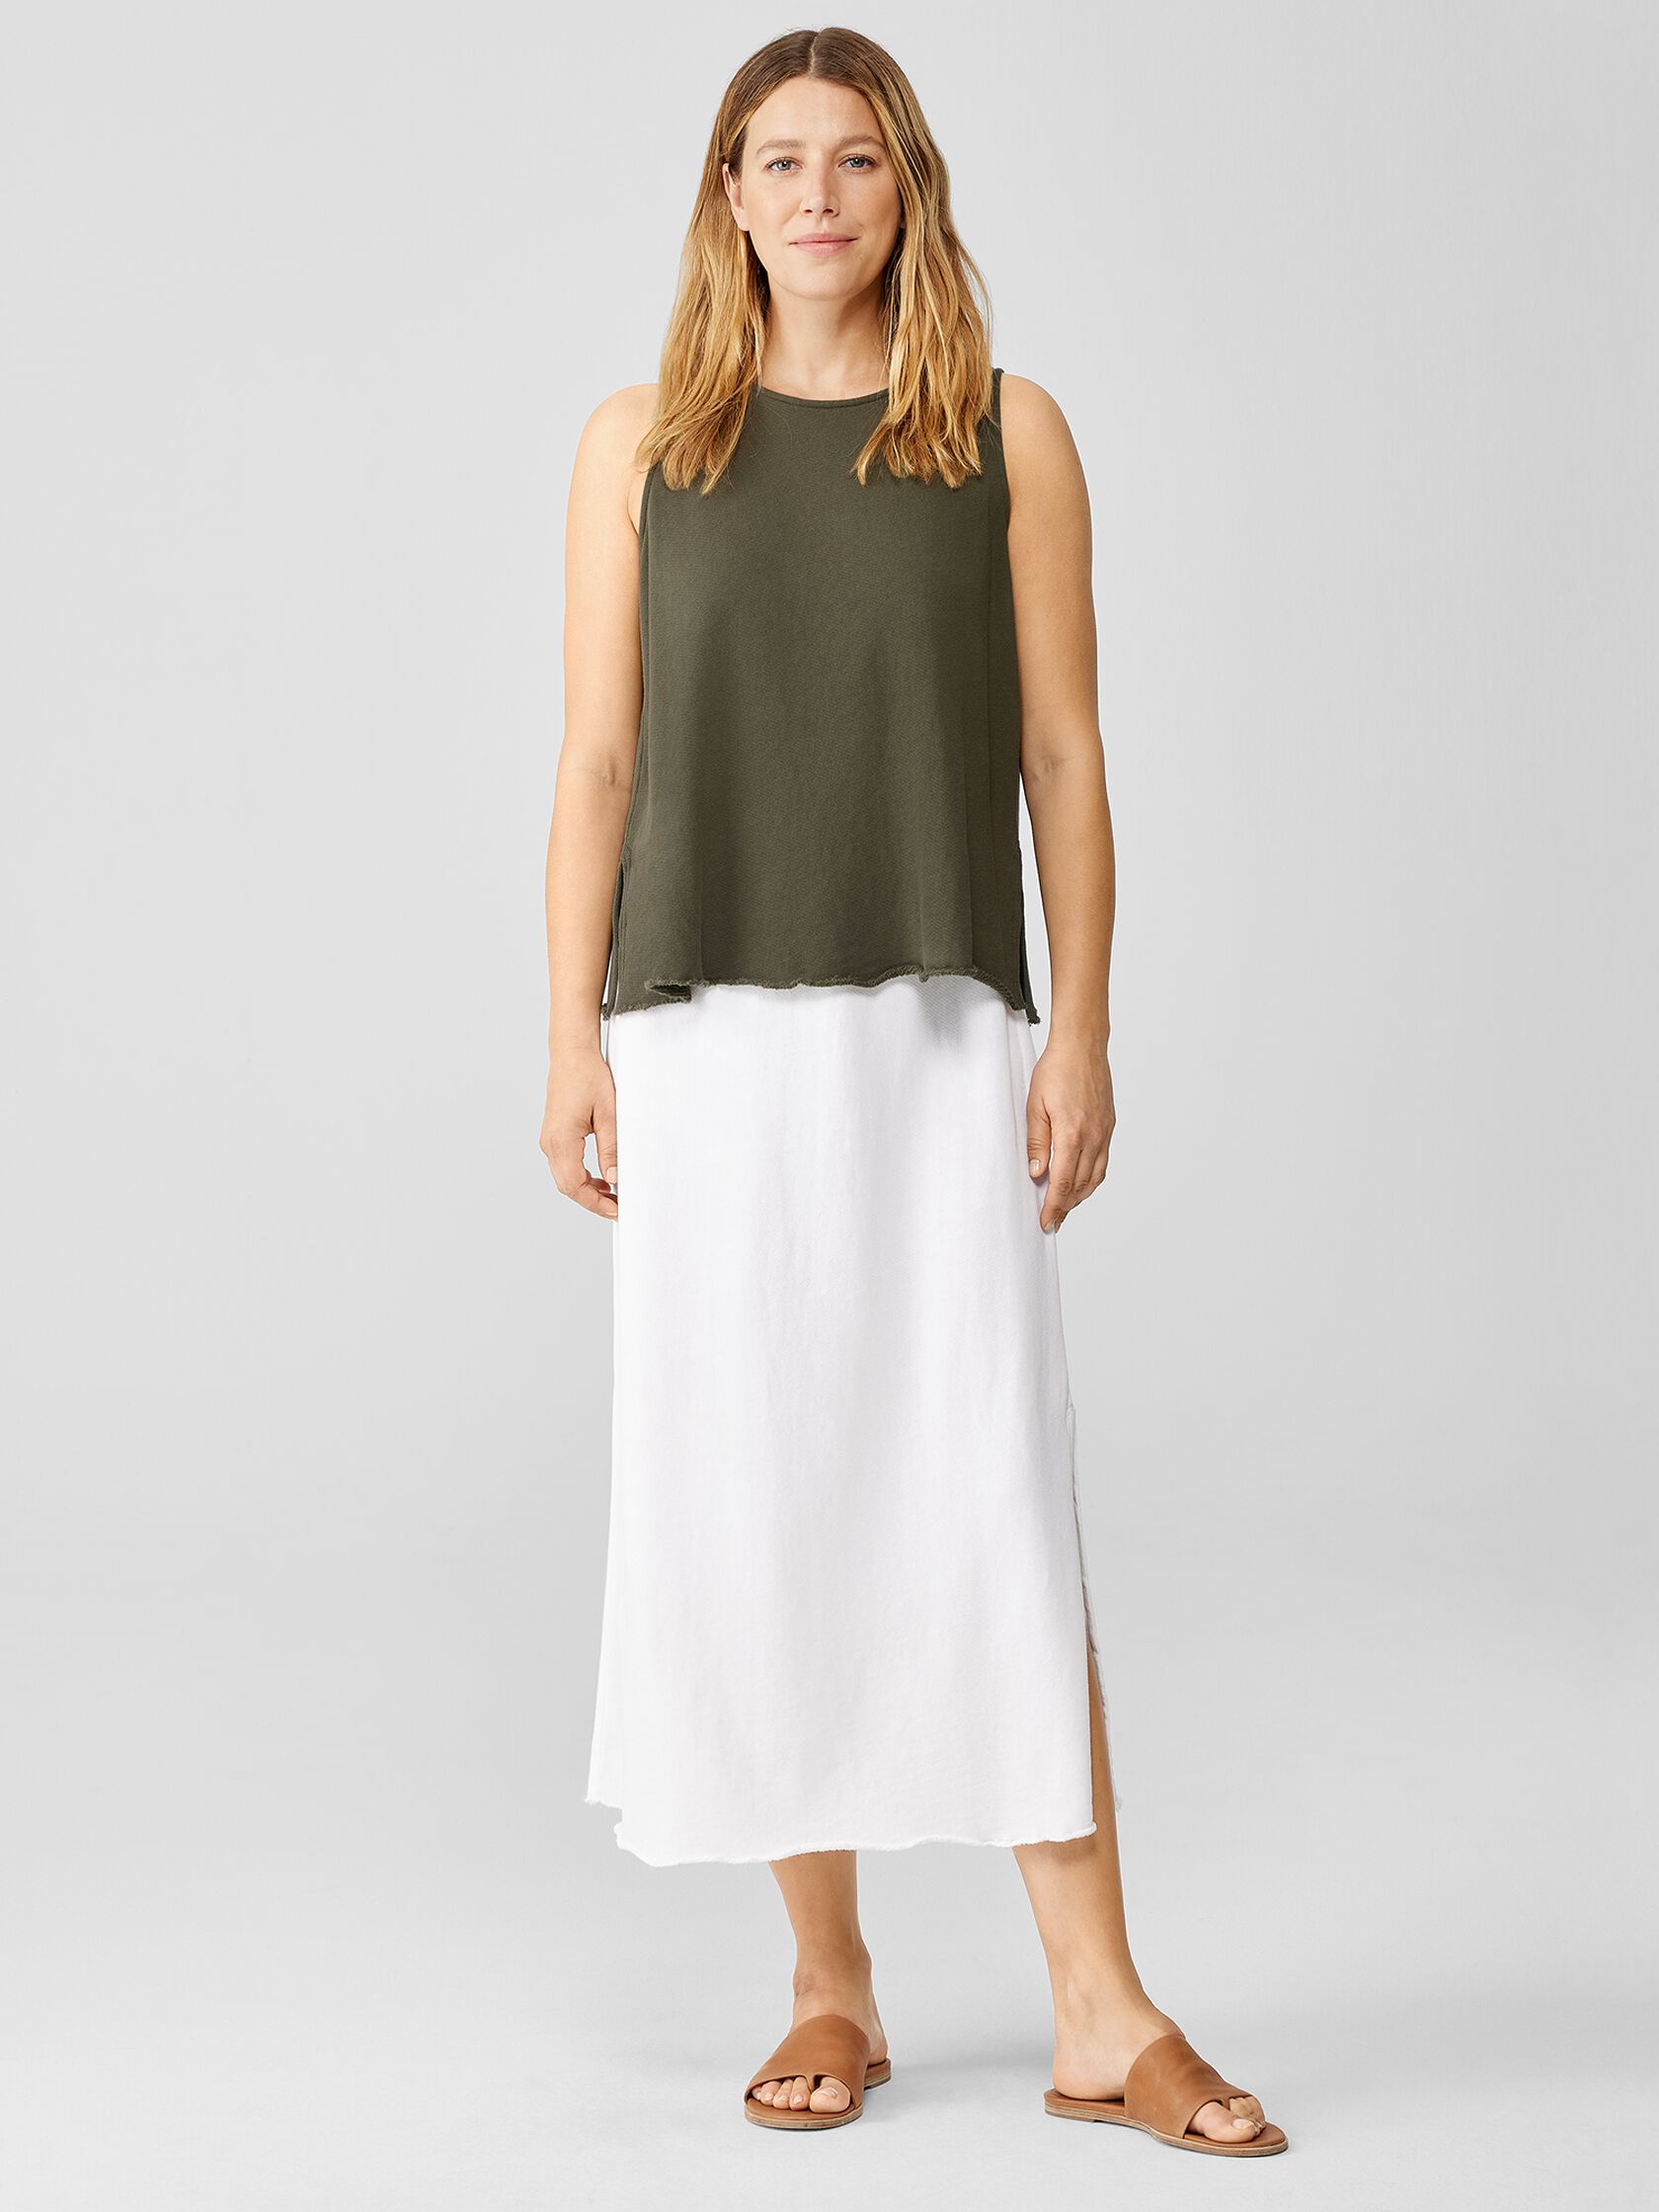 Lightweight Organic Cotton Terry A-Line Skirt